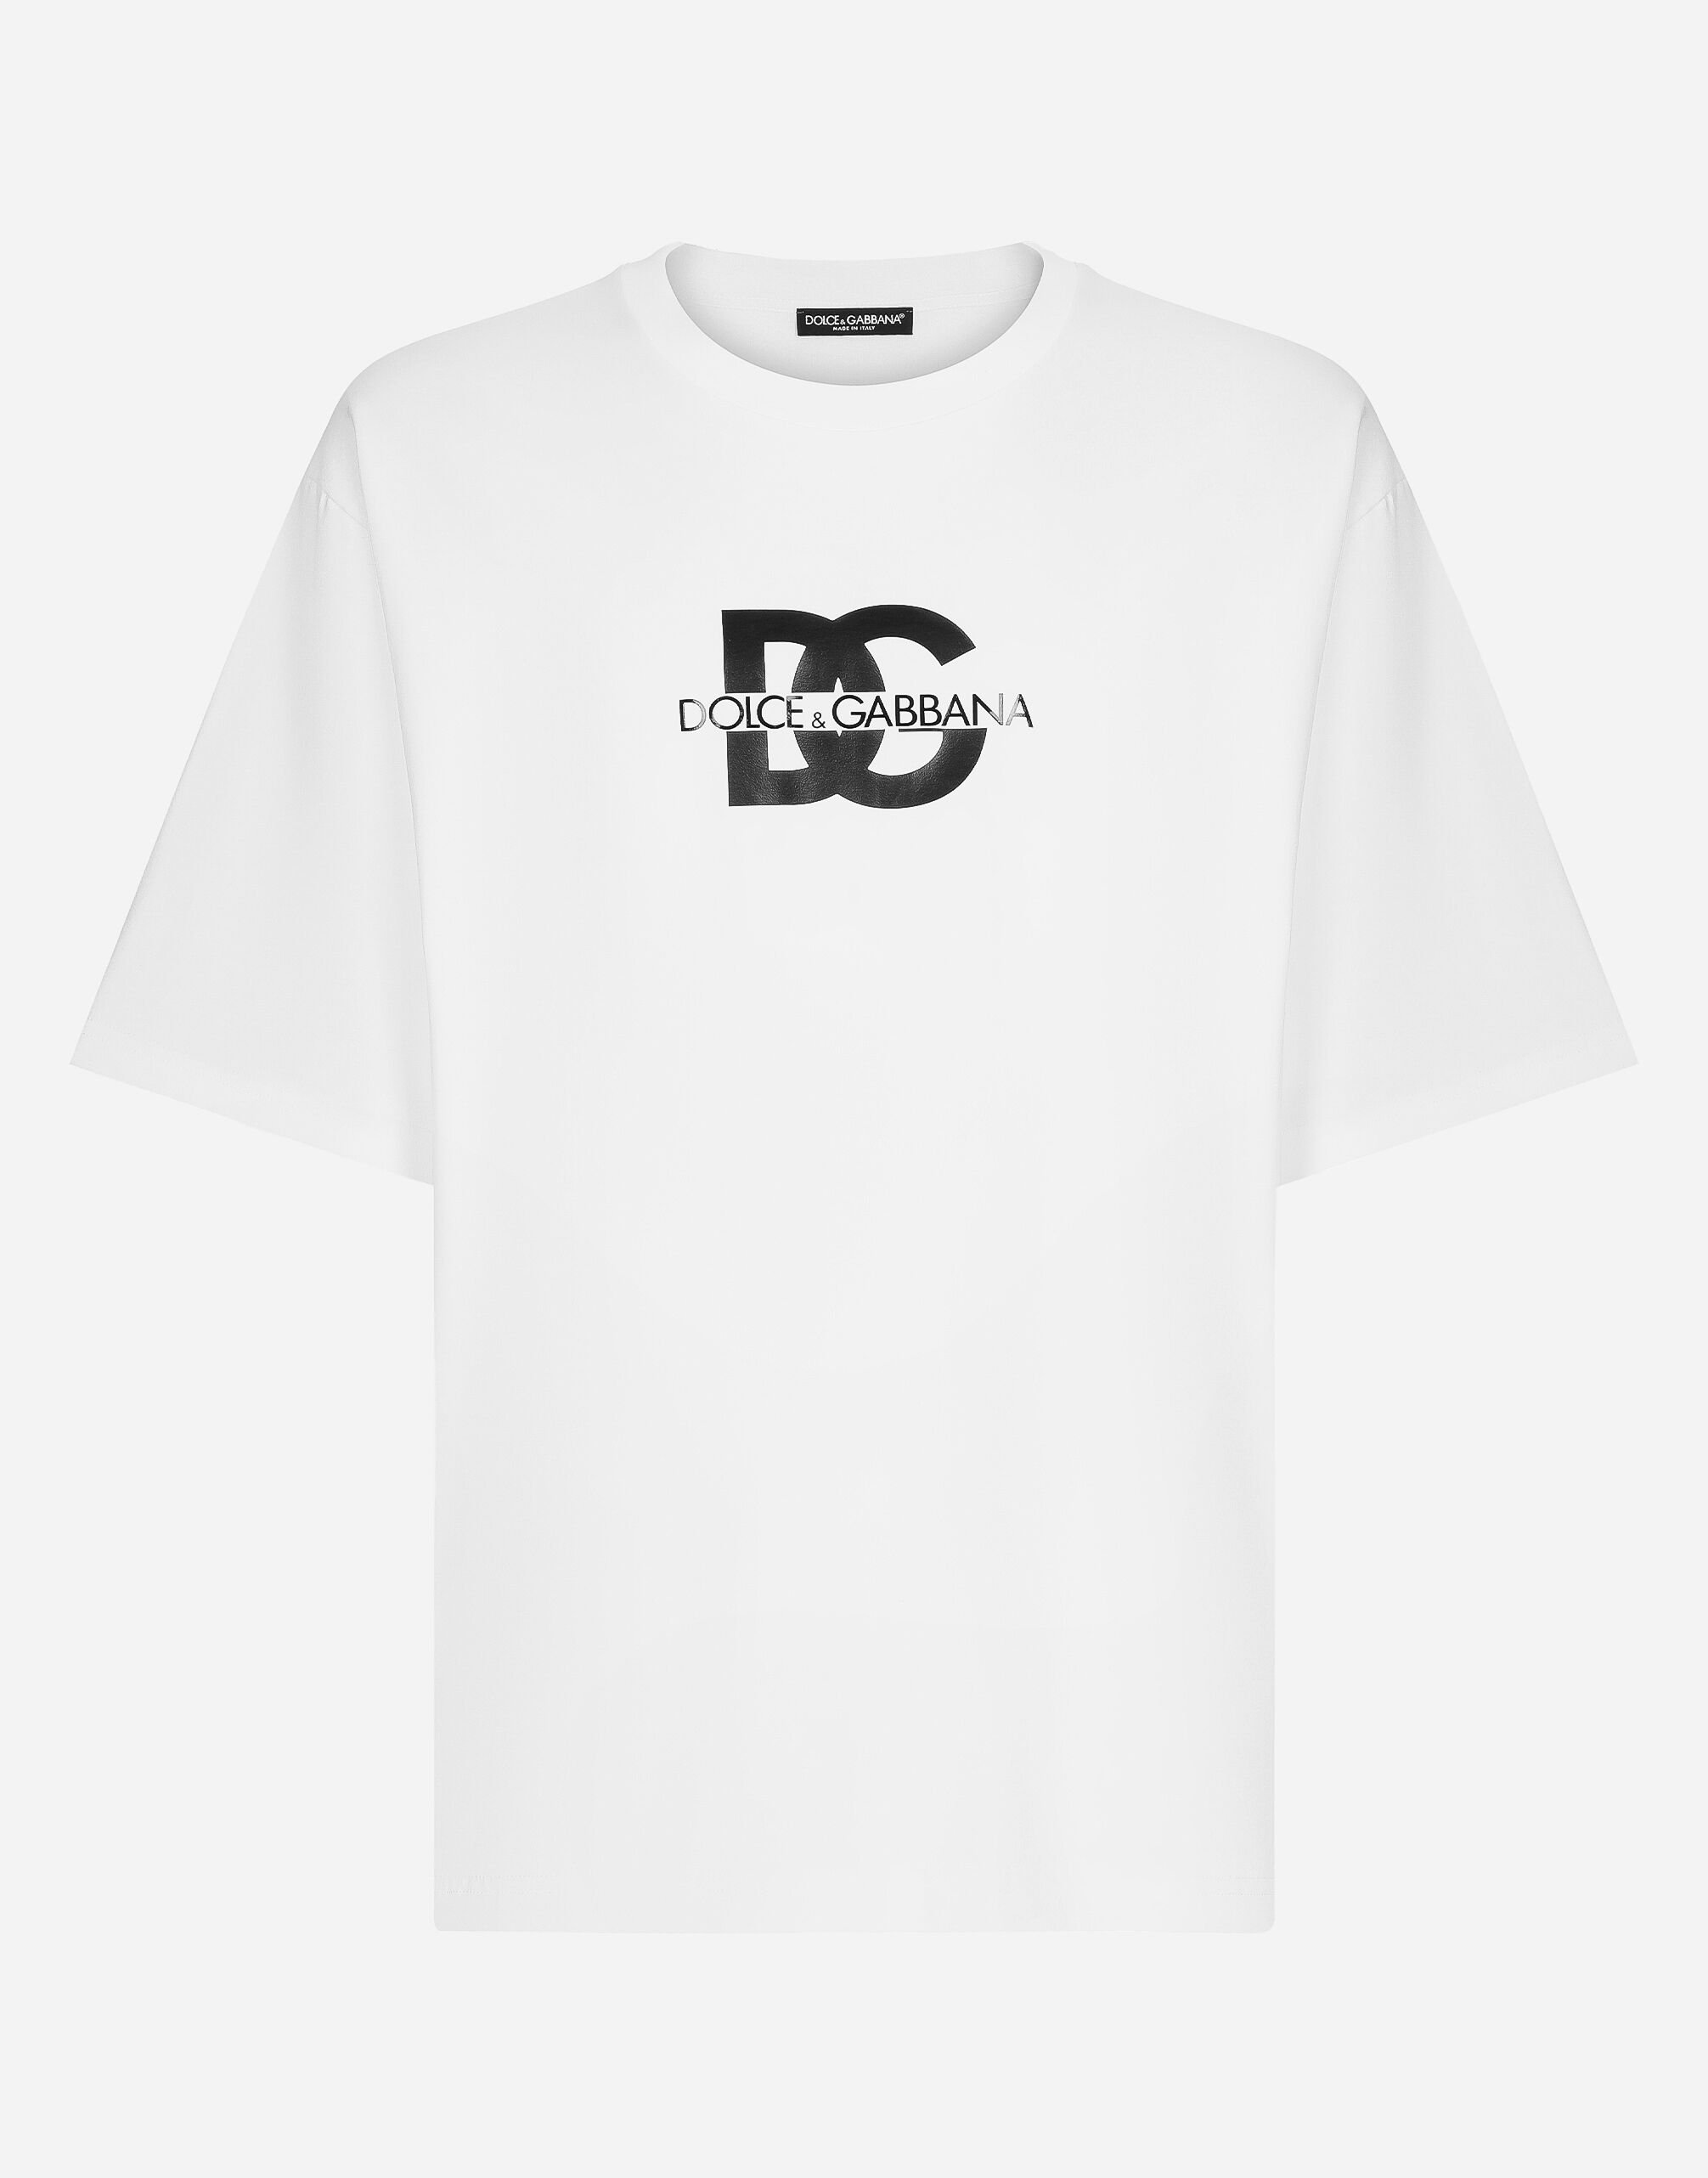 Dolce & Gabbana Short-sleeved T-shirt with DG logo print Green BM2336AG182